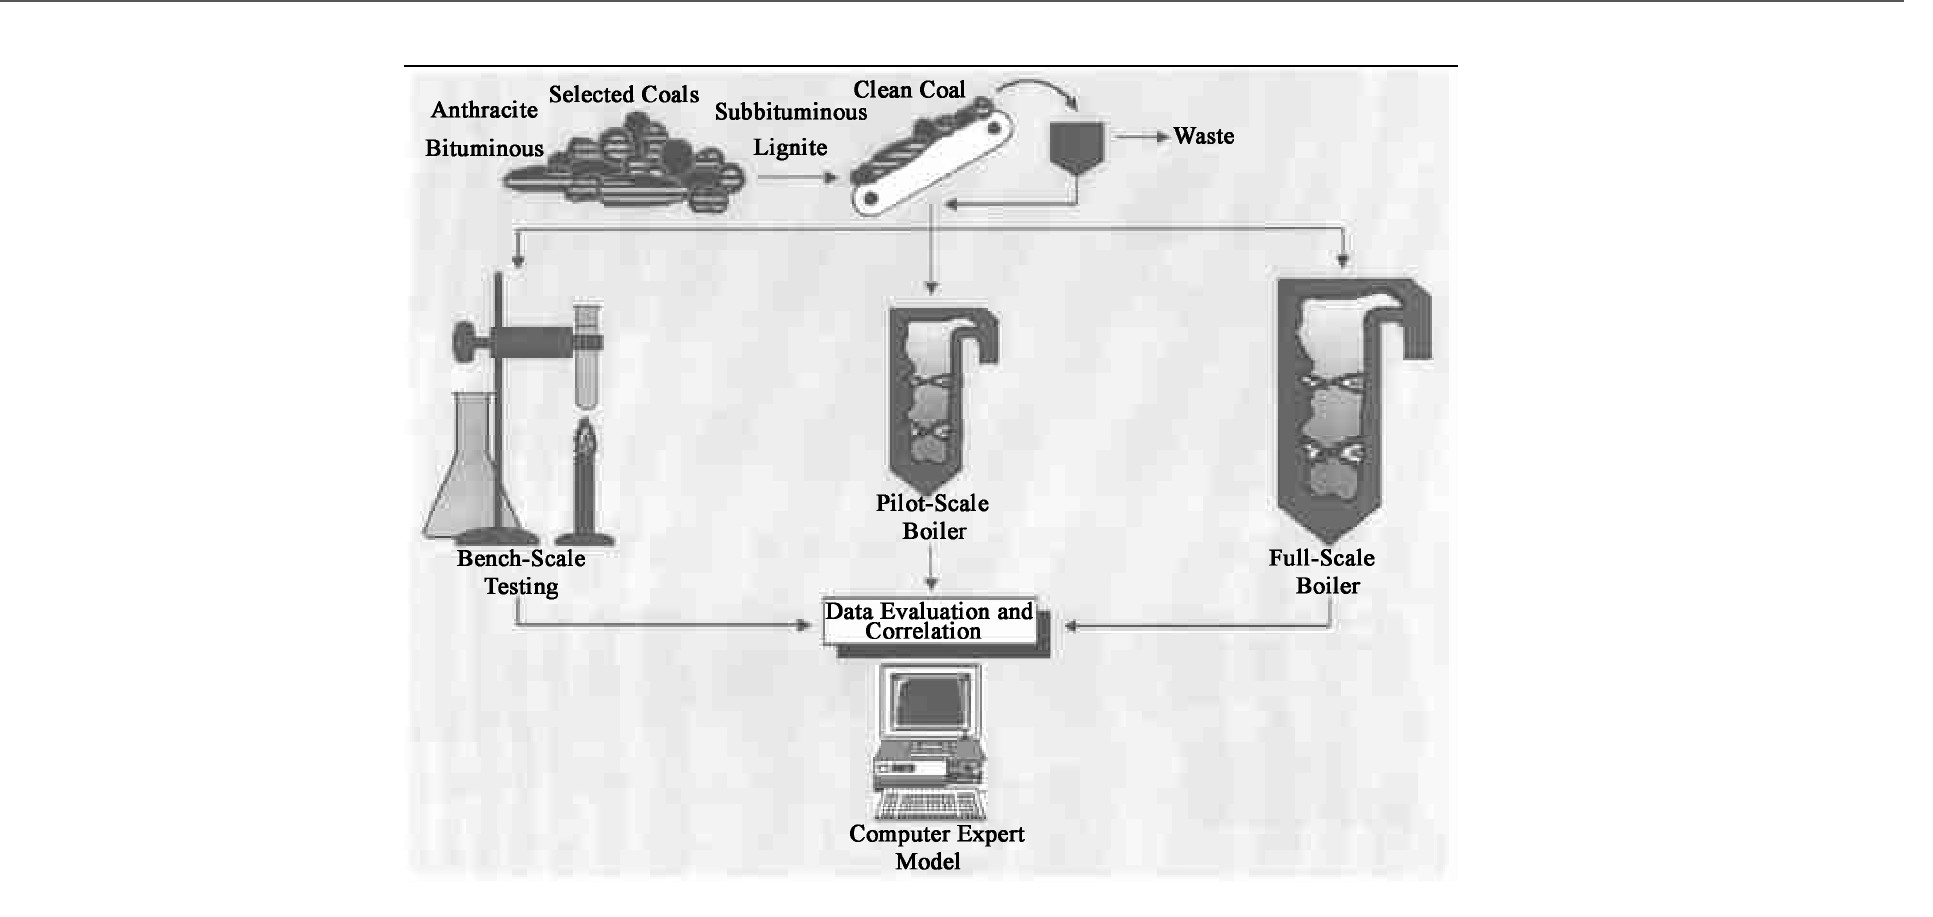 图7 ABB燃烧工程公司的燃烧配煤专家系统[20]